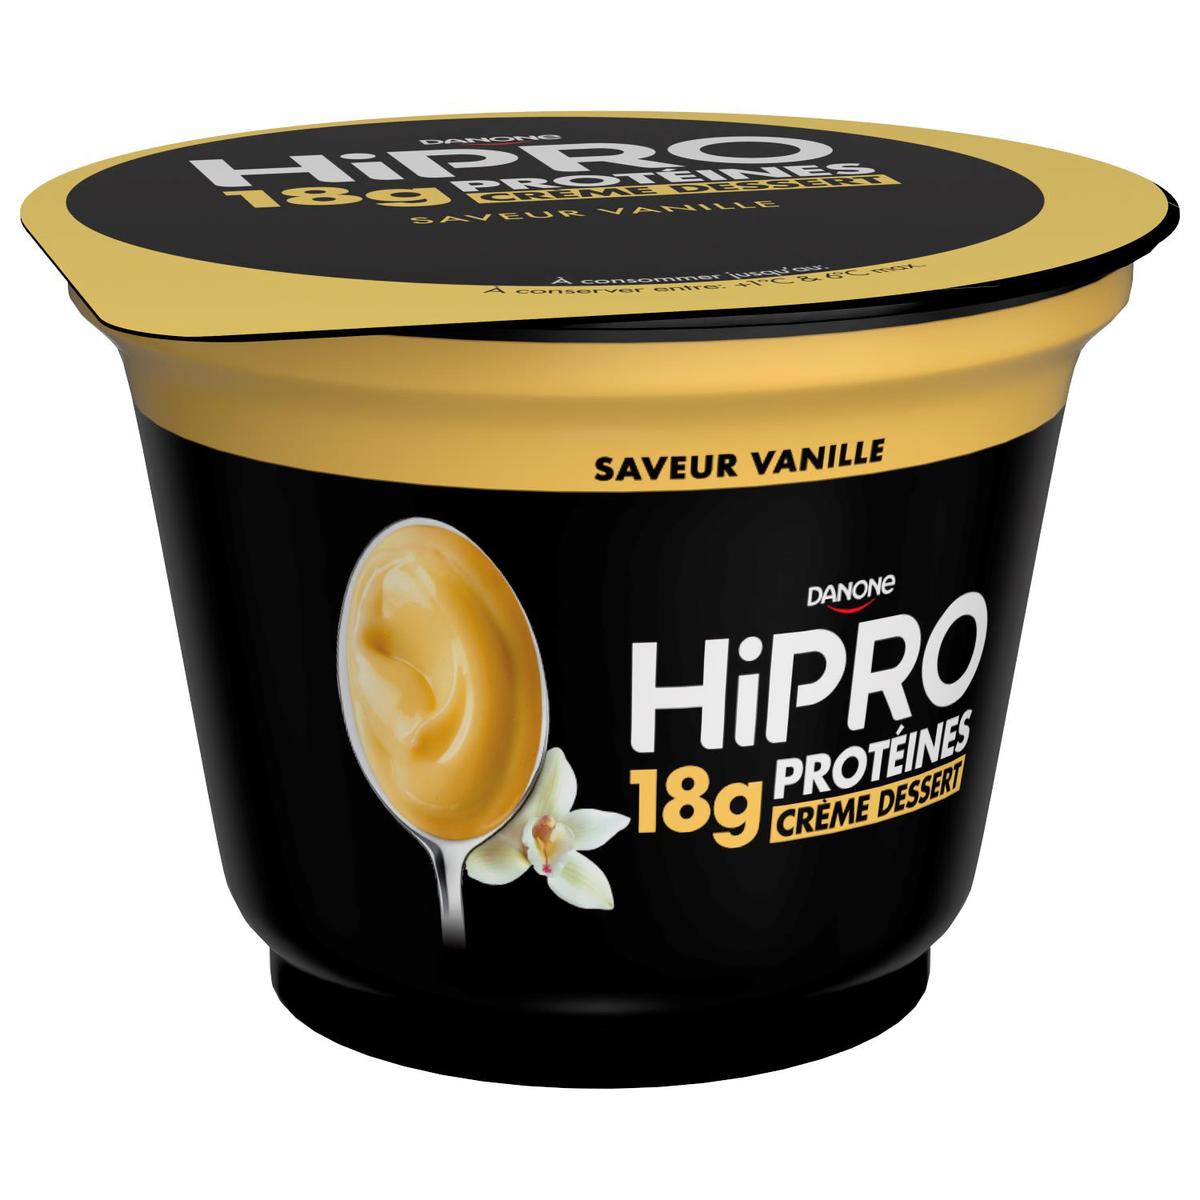 Crème dessert vanille protéinée HIPRO